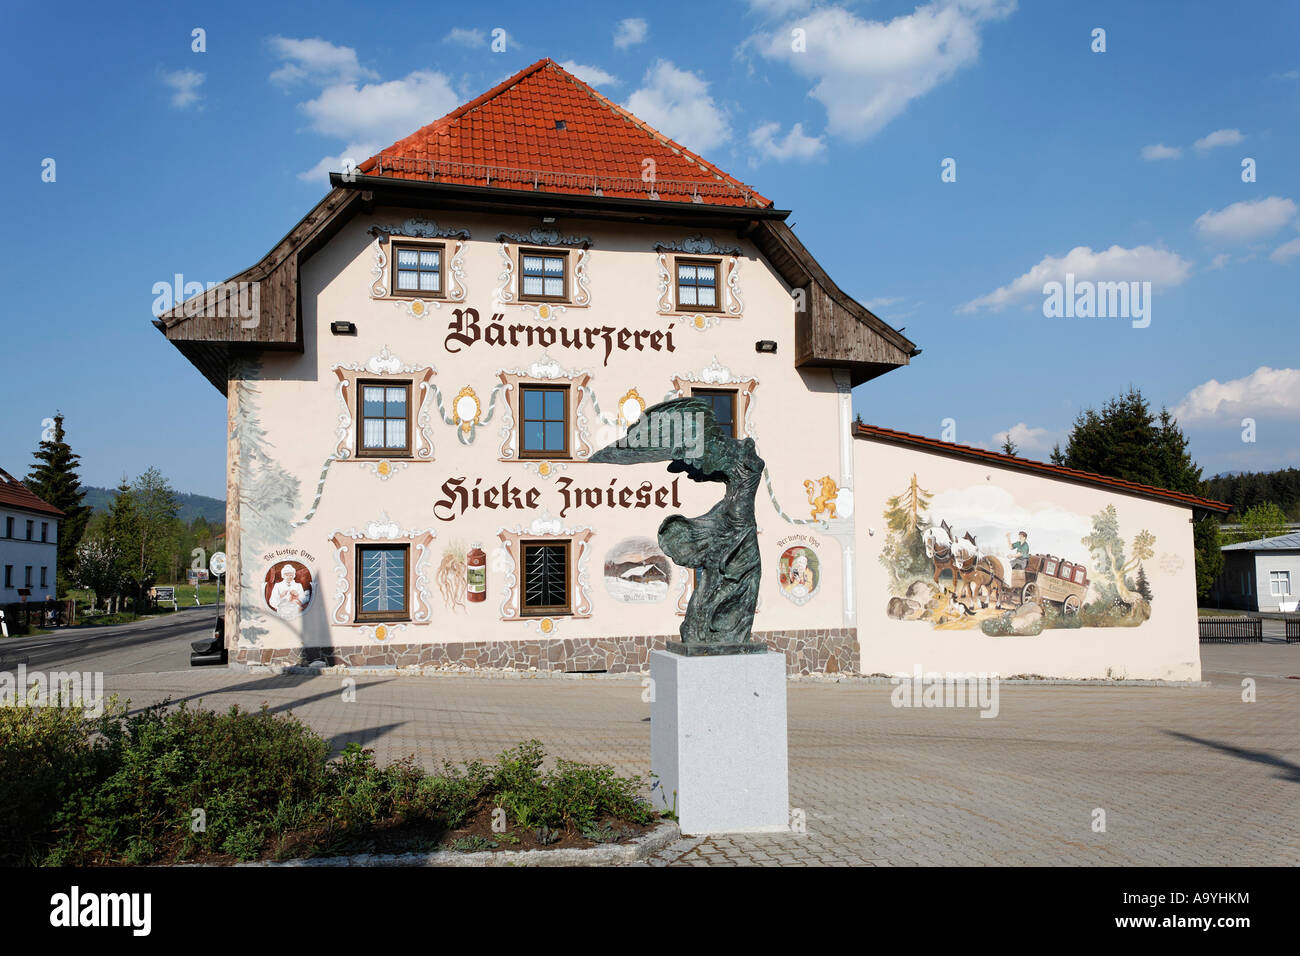 Baerwurzerei Hieke distillery in Zwiesel, Bayerischer Wald, Lower Bavaria, Germany Stock Photo